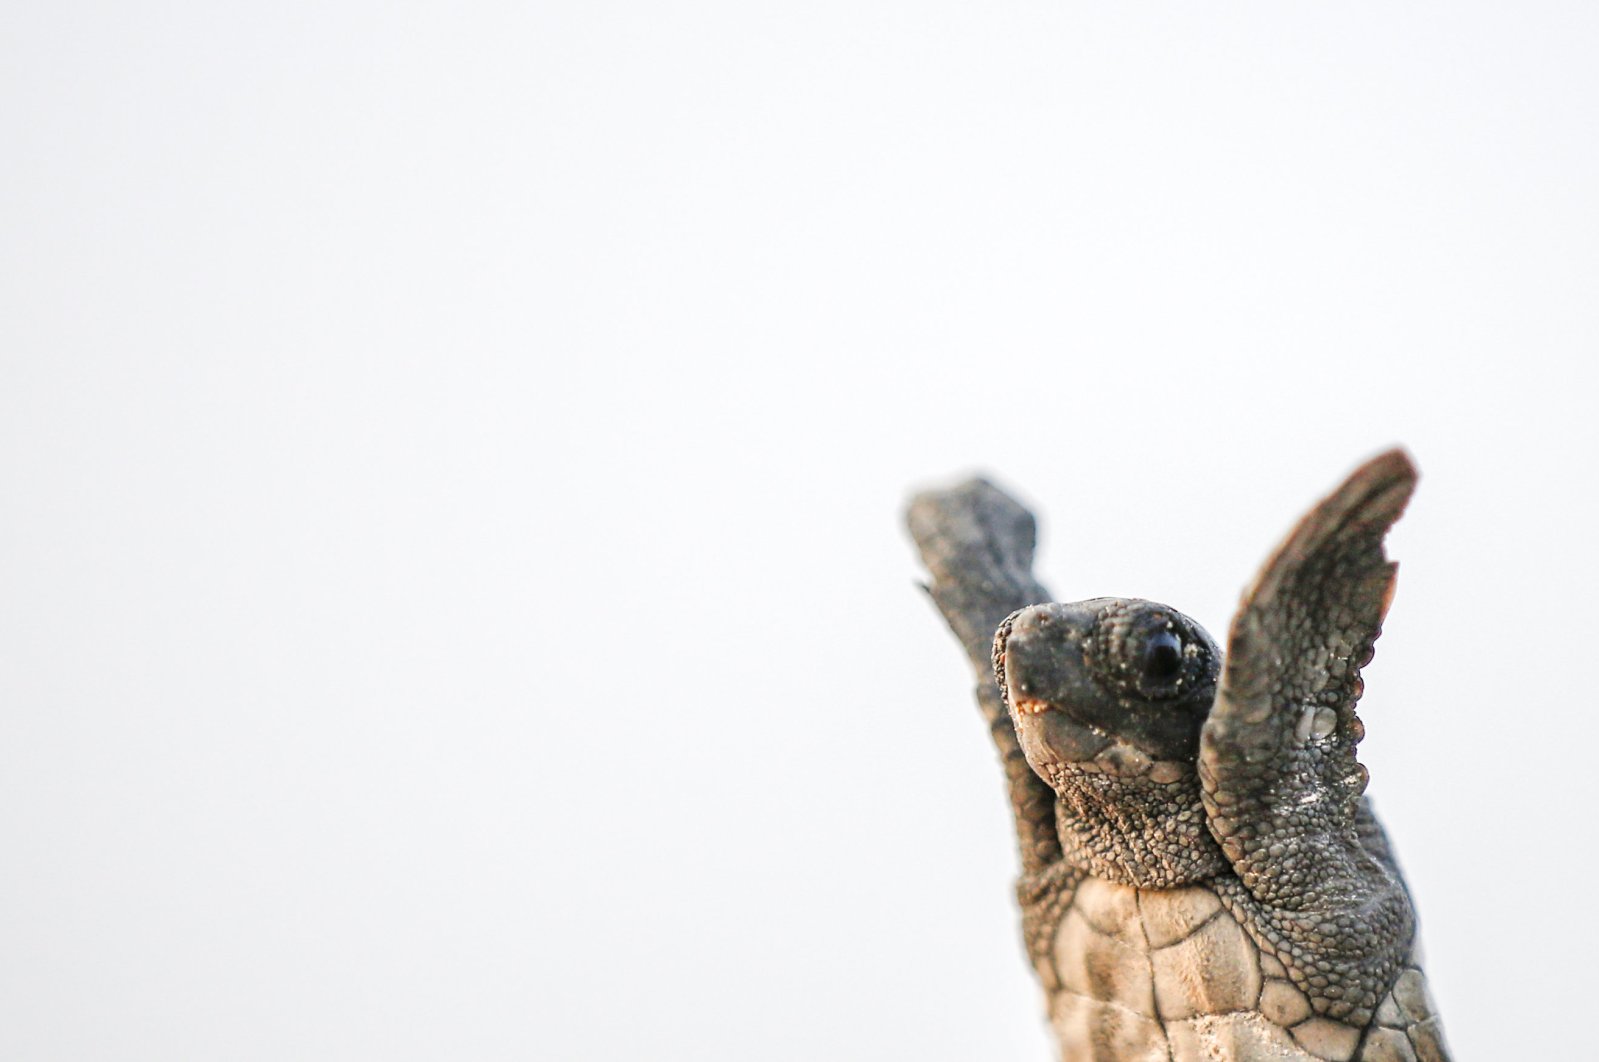 Caretta carettas are the most common turtle species found in the Mediterranean. (iStock Photo)